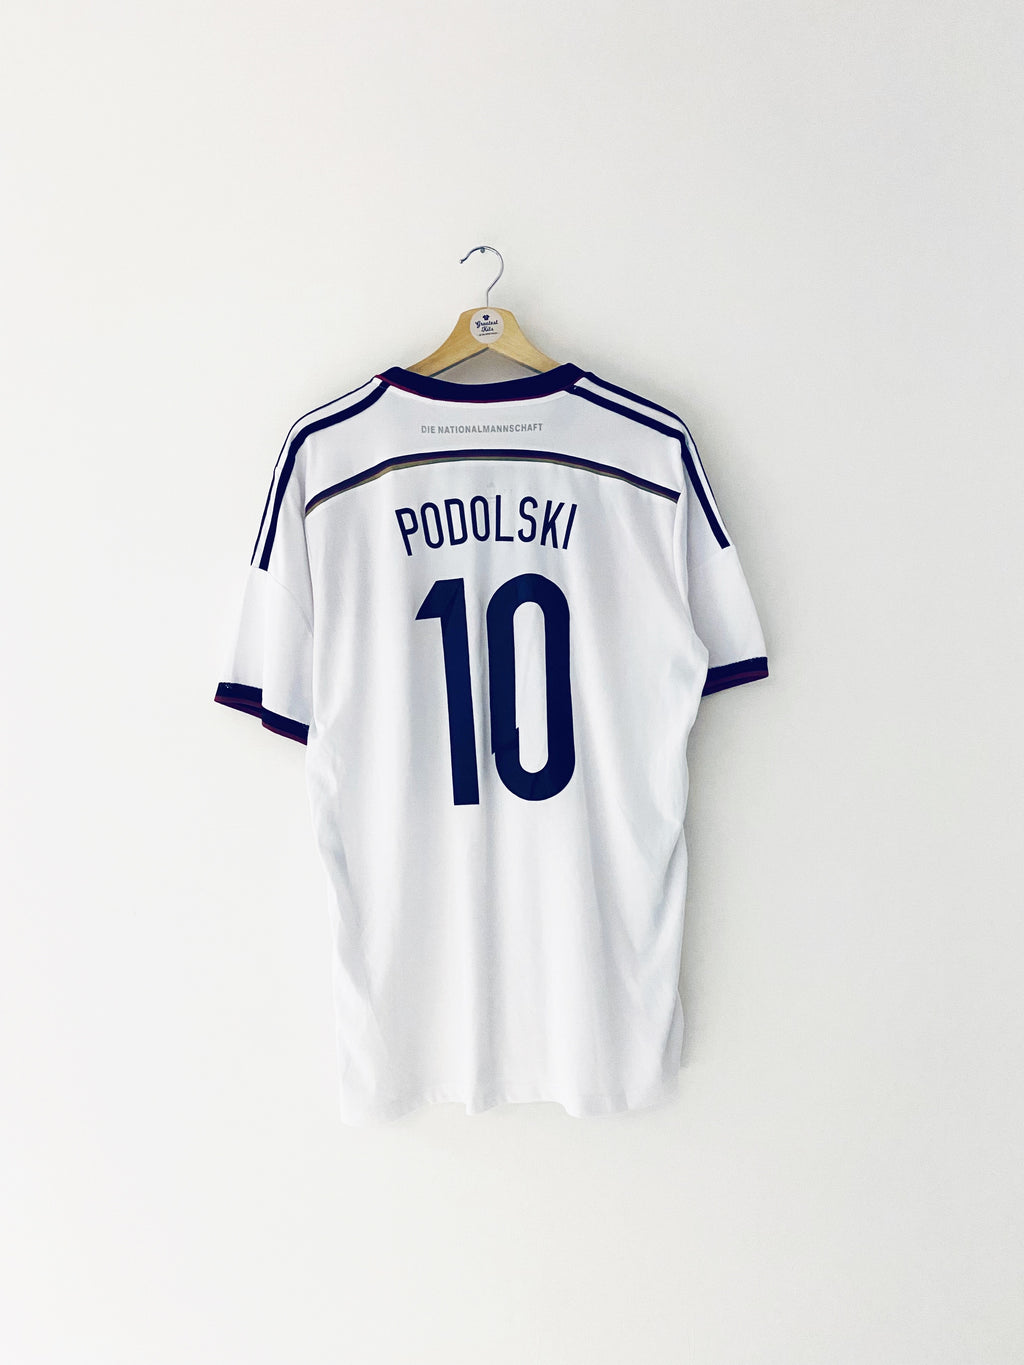 Maillot domicile Allemagne 2014/15 Podolski #10 (XL) 9/10